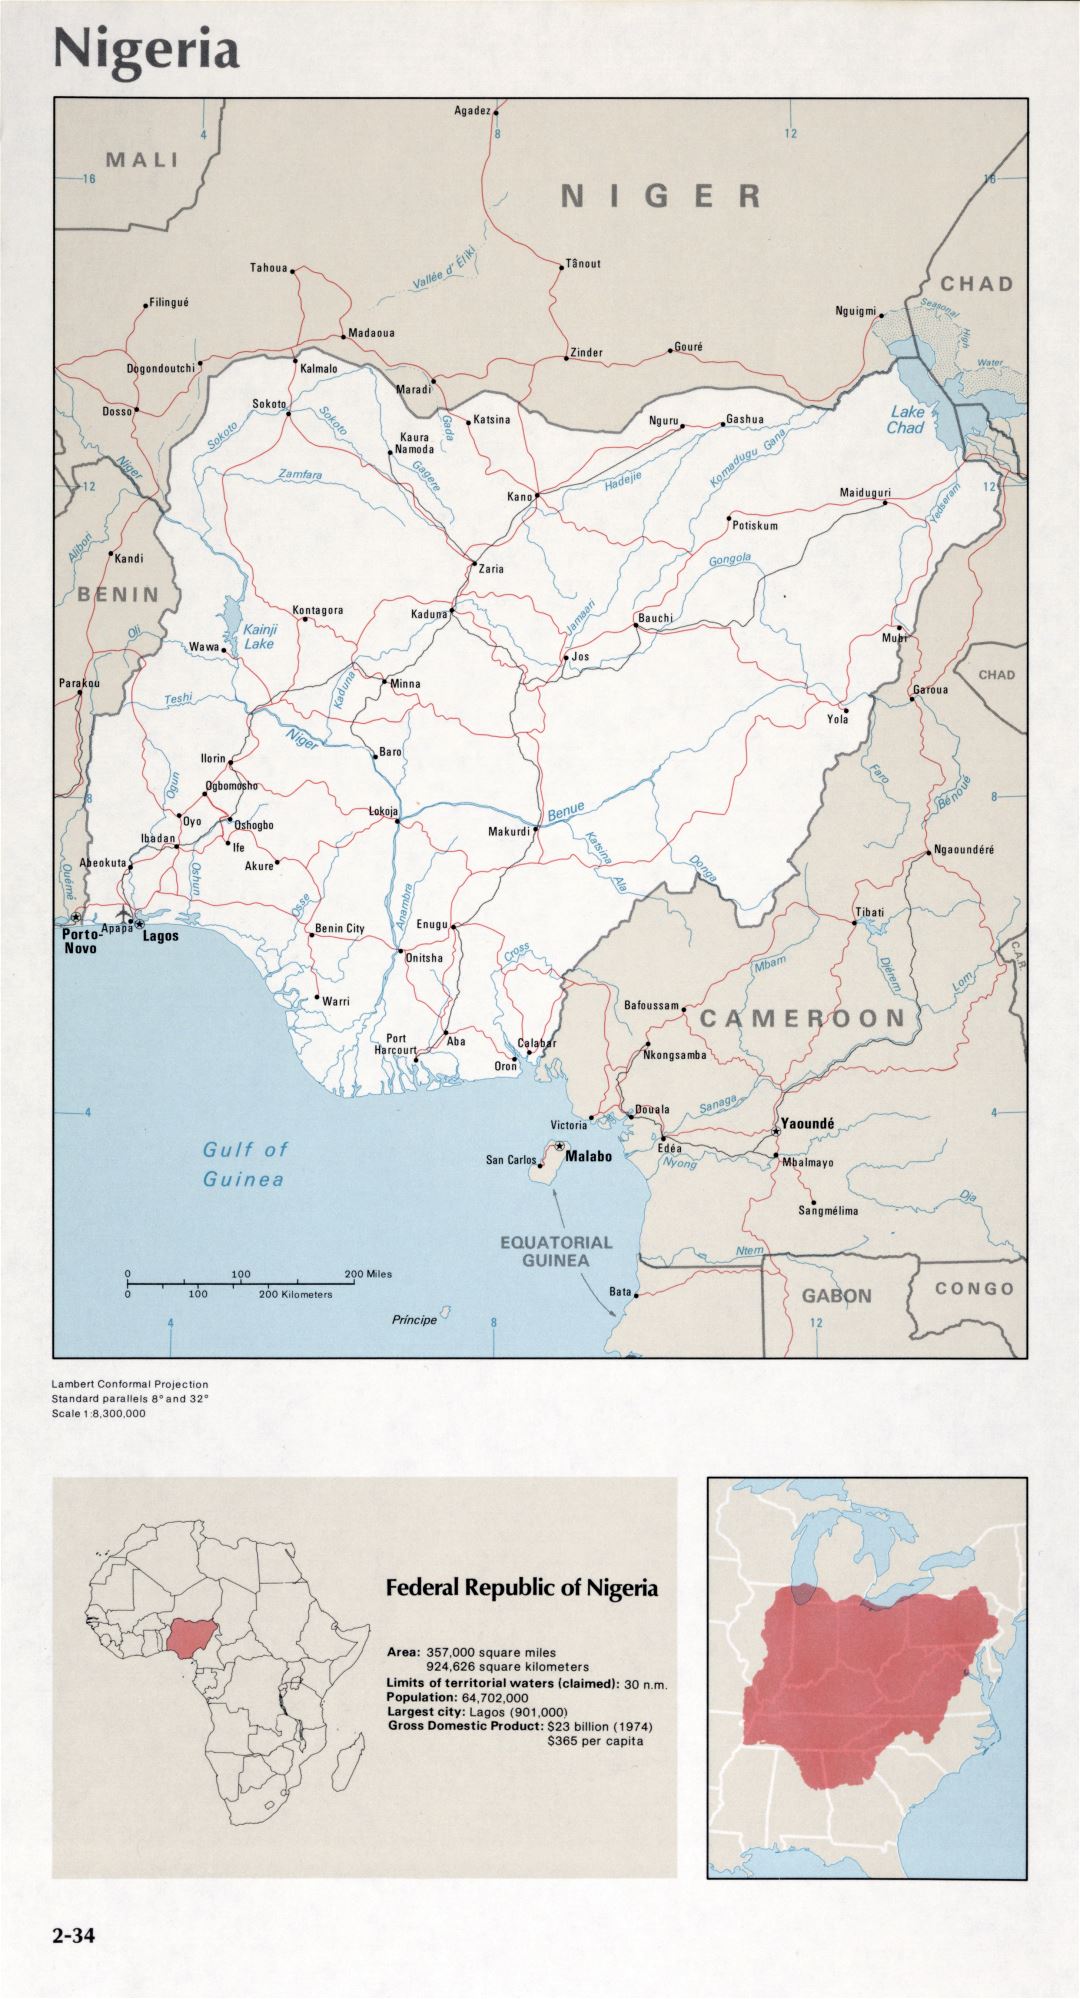 Map of Nigeria (2-34)